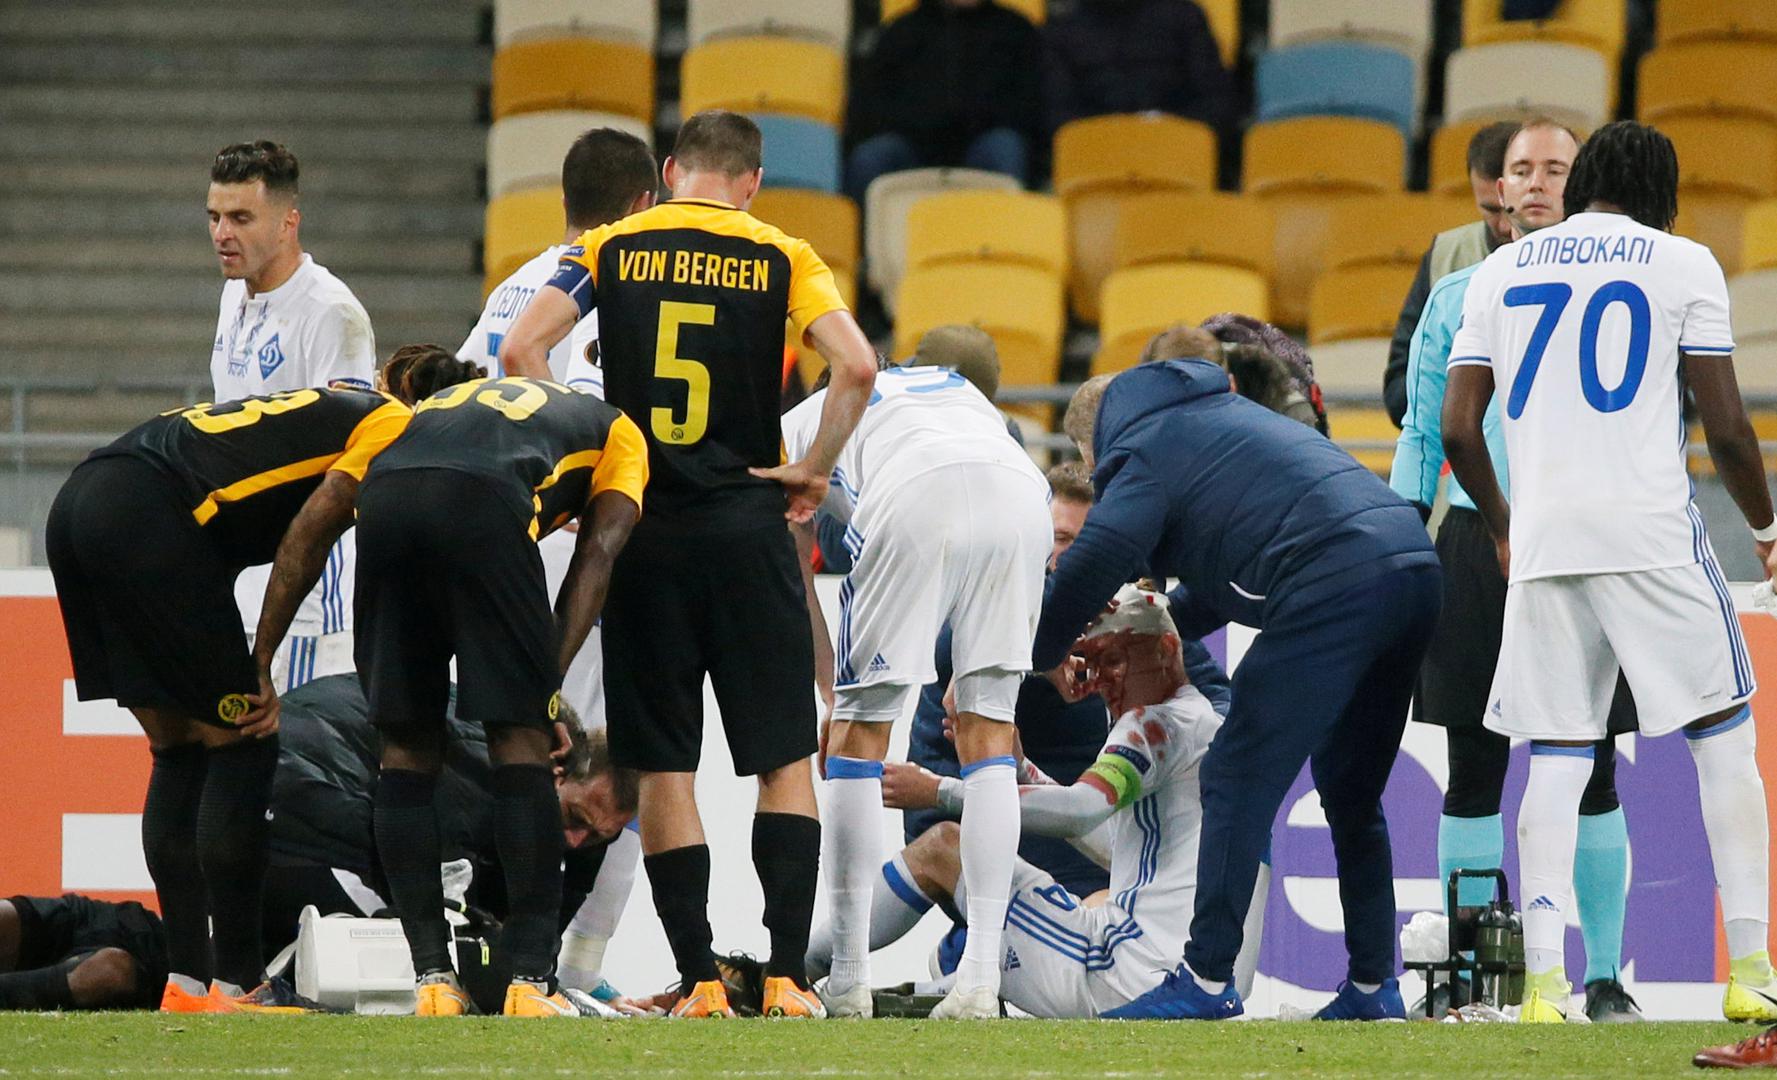 Hrvatski stoper i kapetan Dinama u zračnom duelu s Moumijem Ngamaleuom dobio je težak udarac u glavu nakon čega mu se niz lice počela slijevati krv.